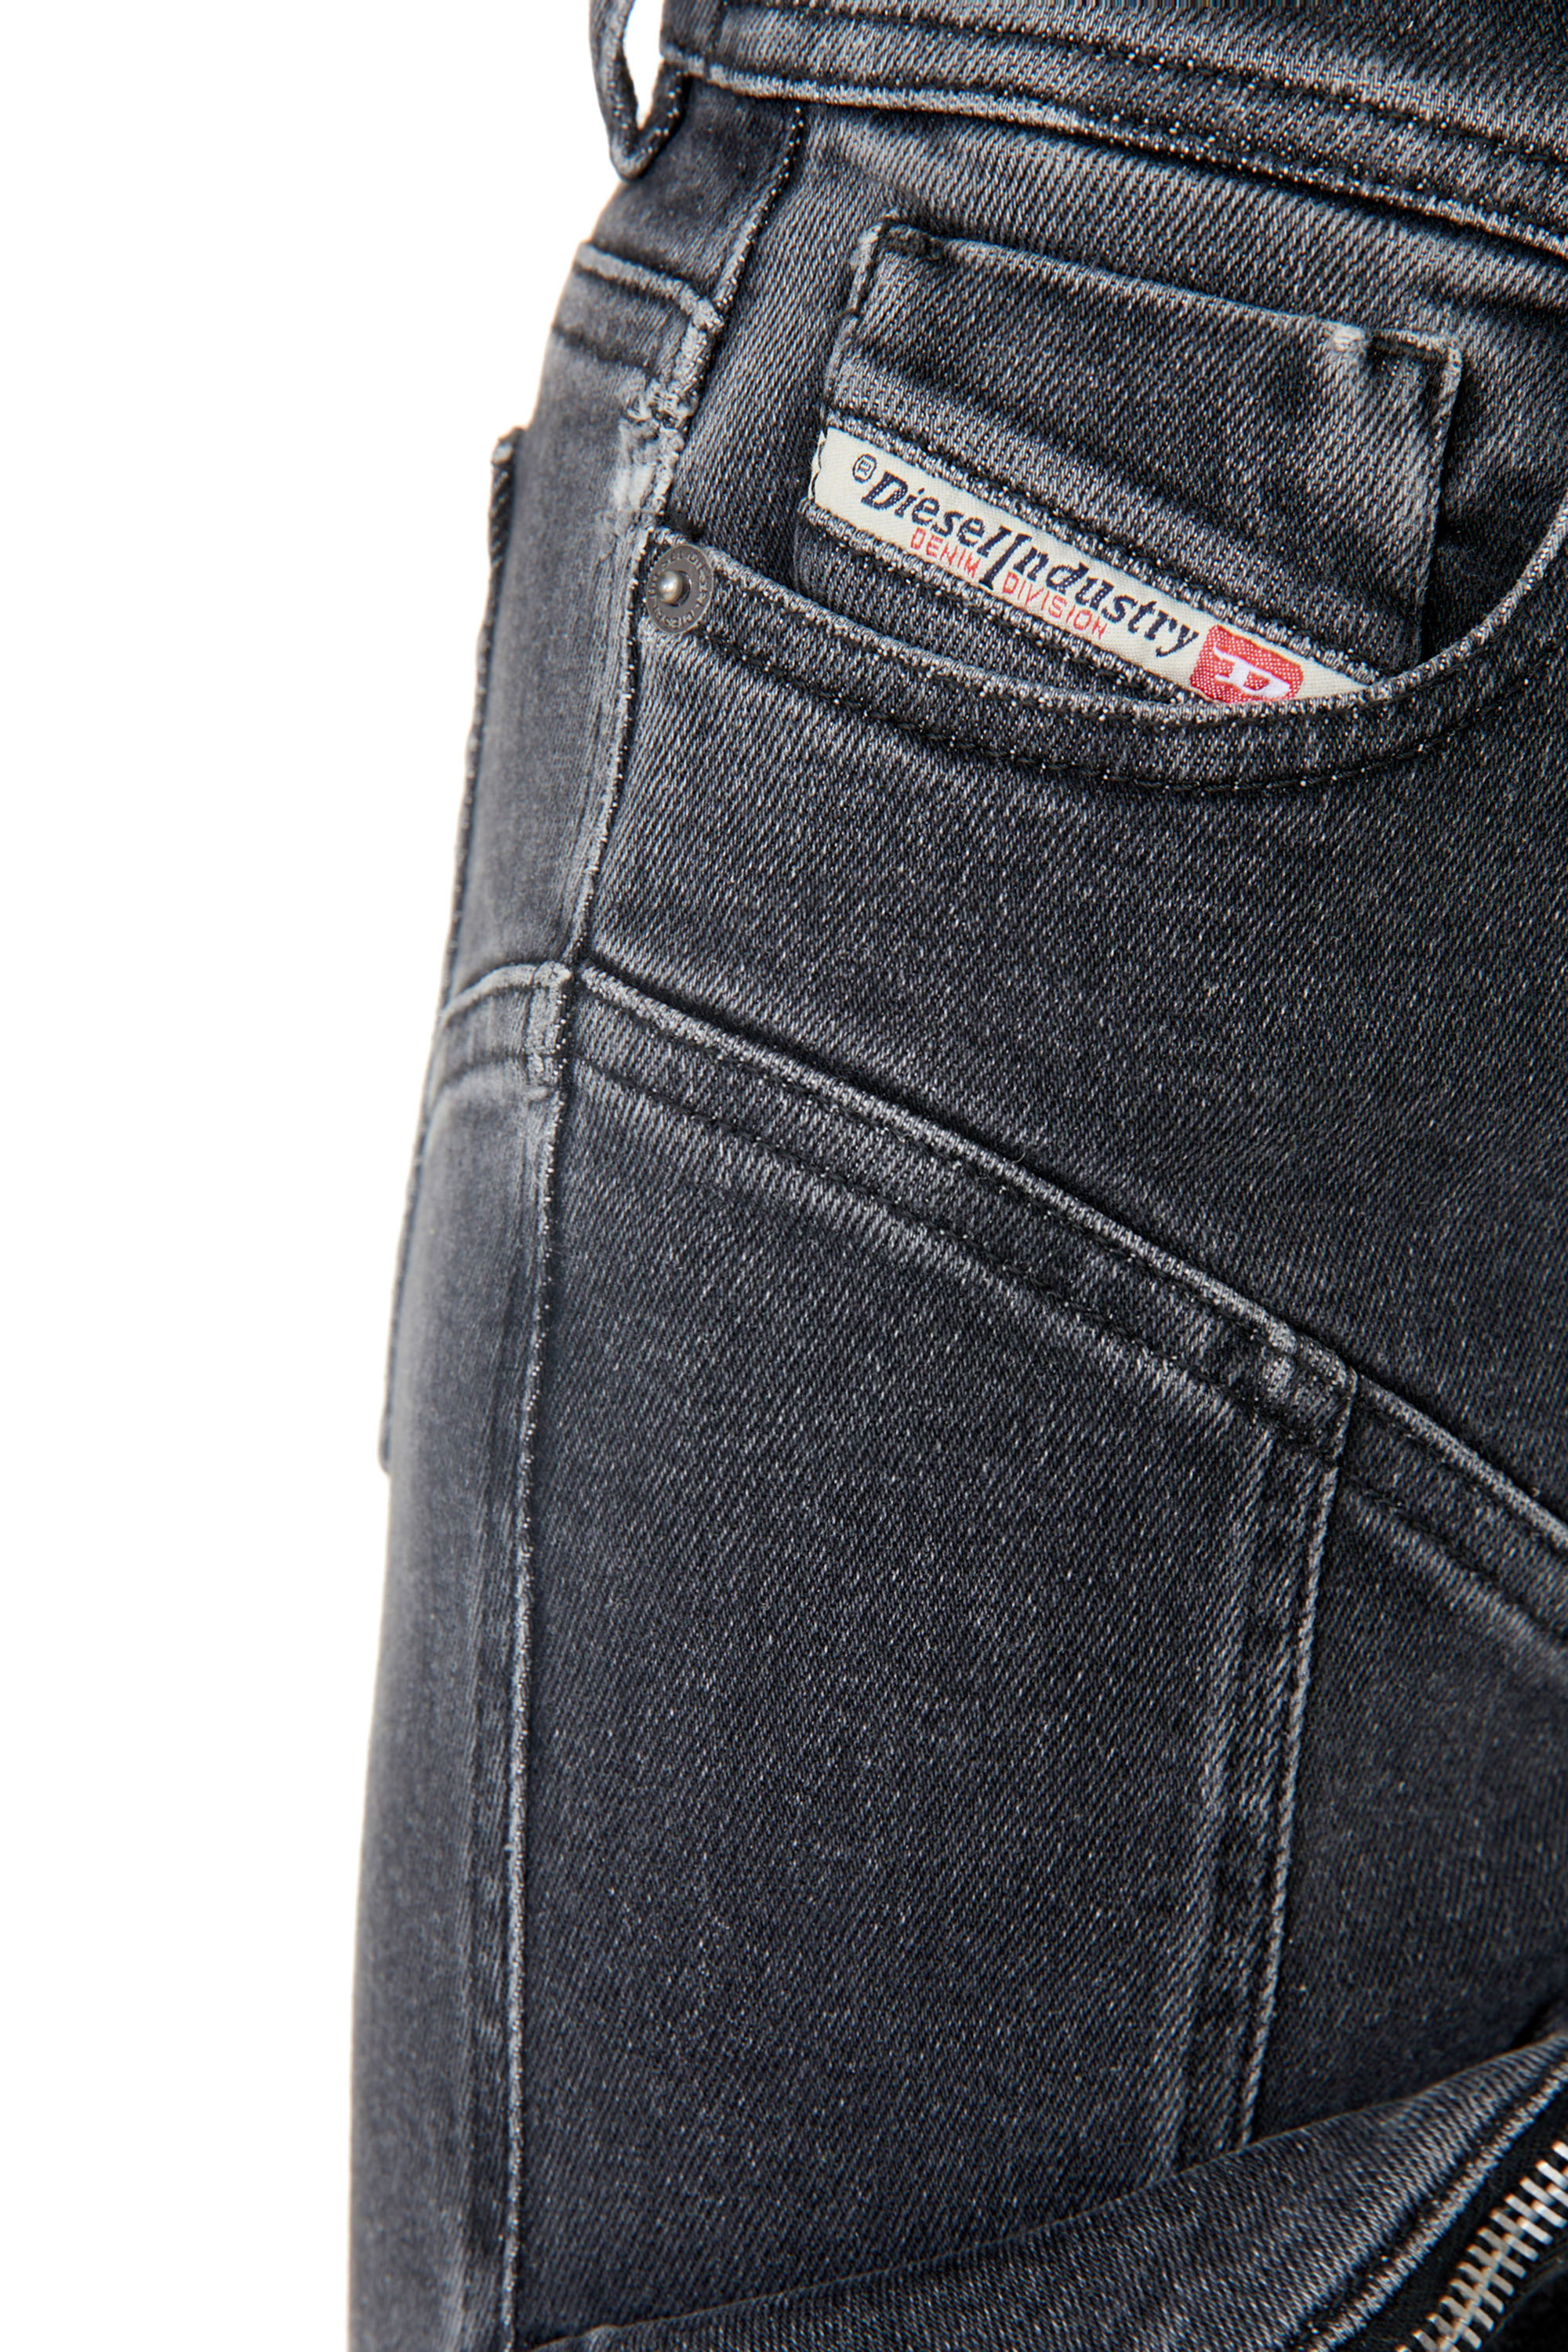 Diesel - Super skinny Jeans 1984 Slandy-High 09F27, Black/Dark grey - Image 3